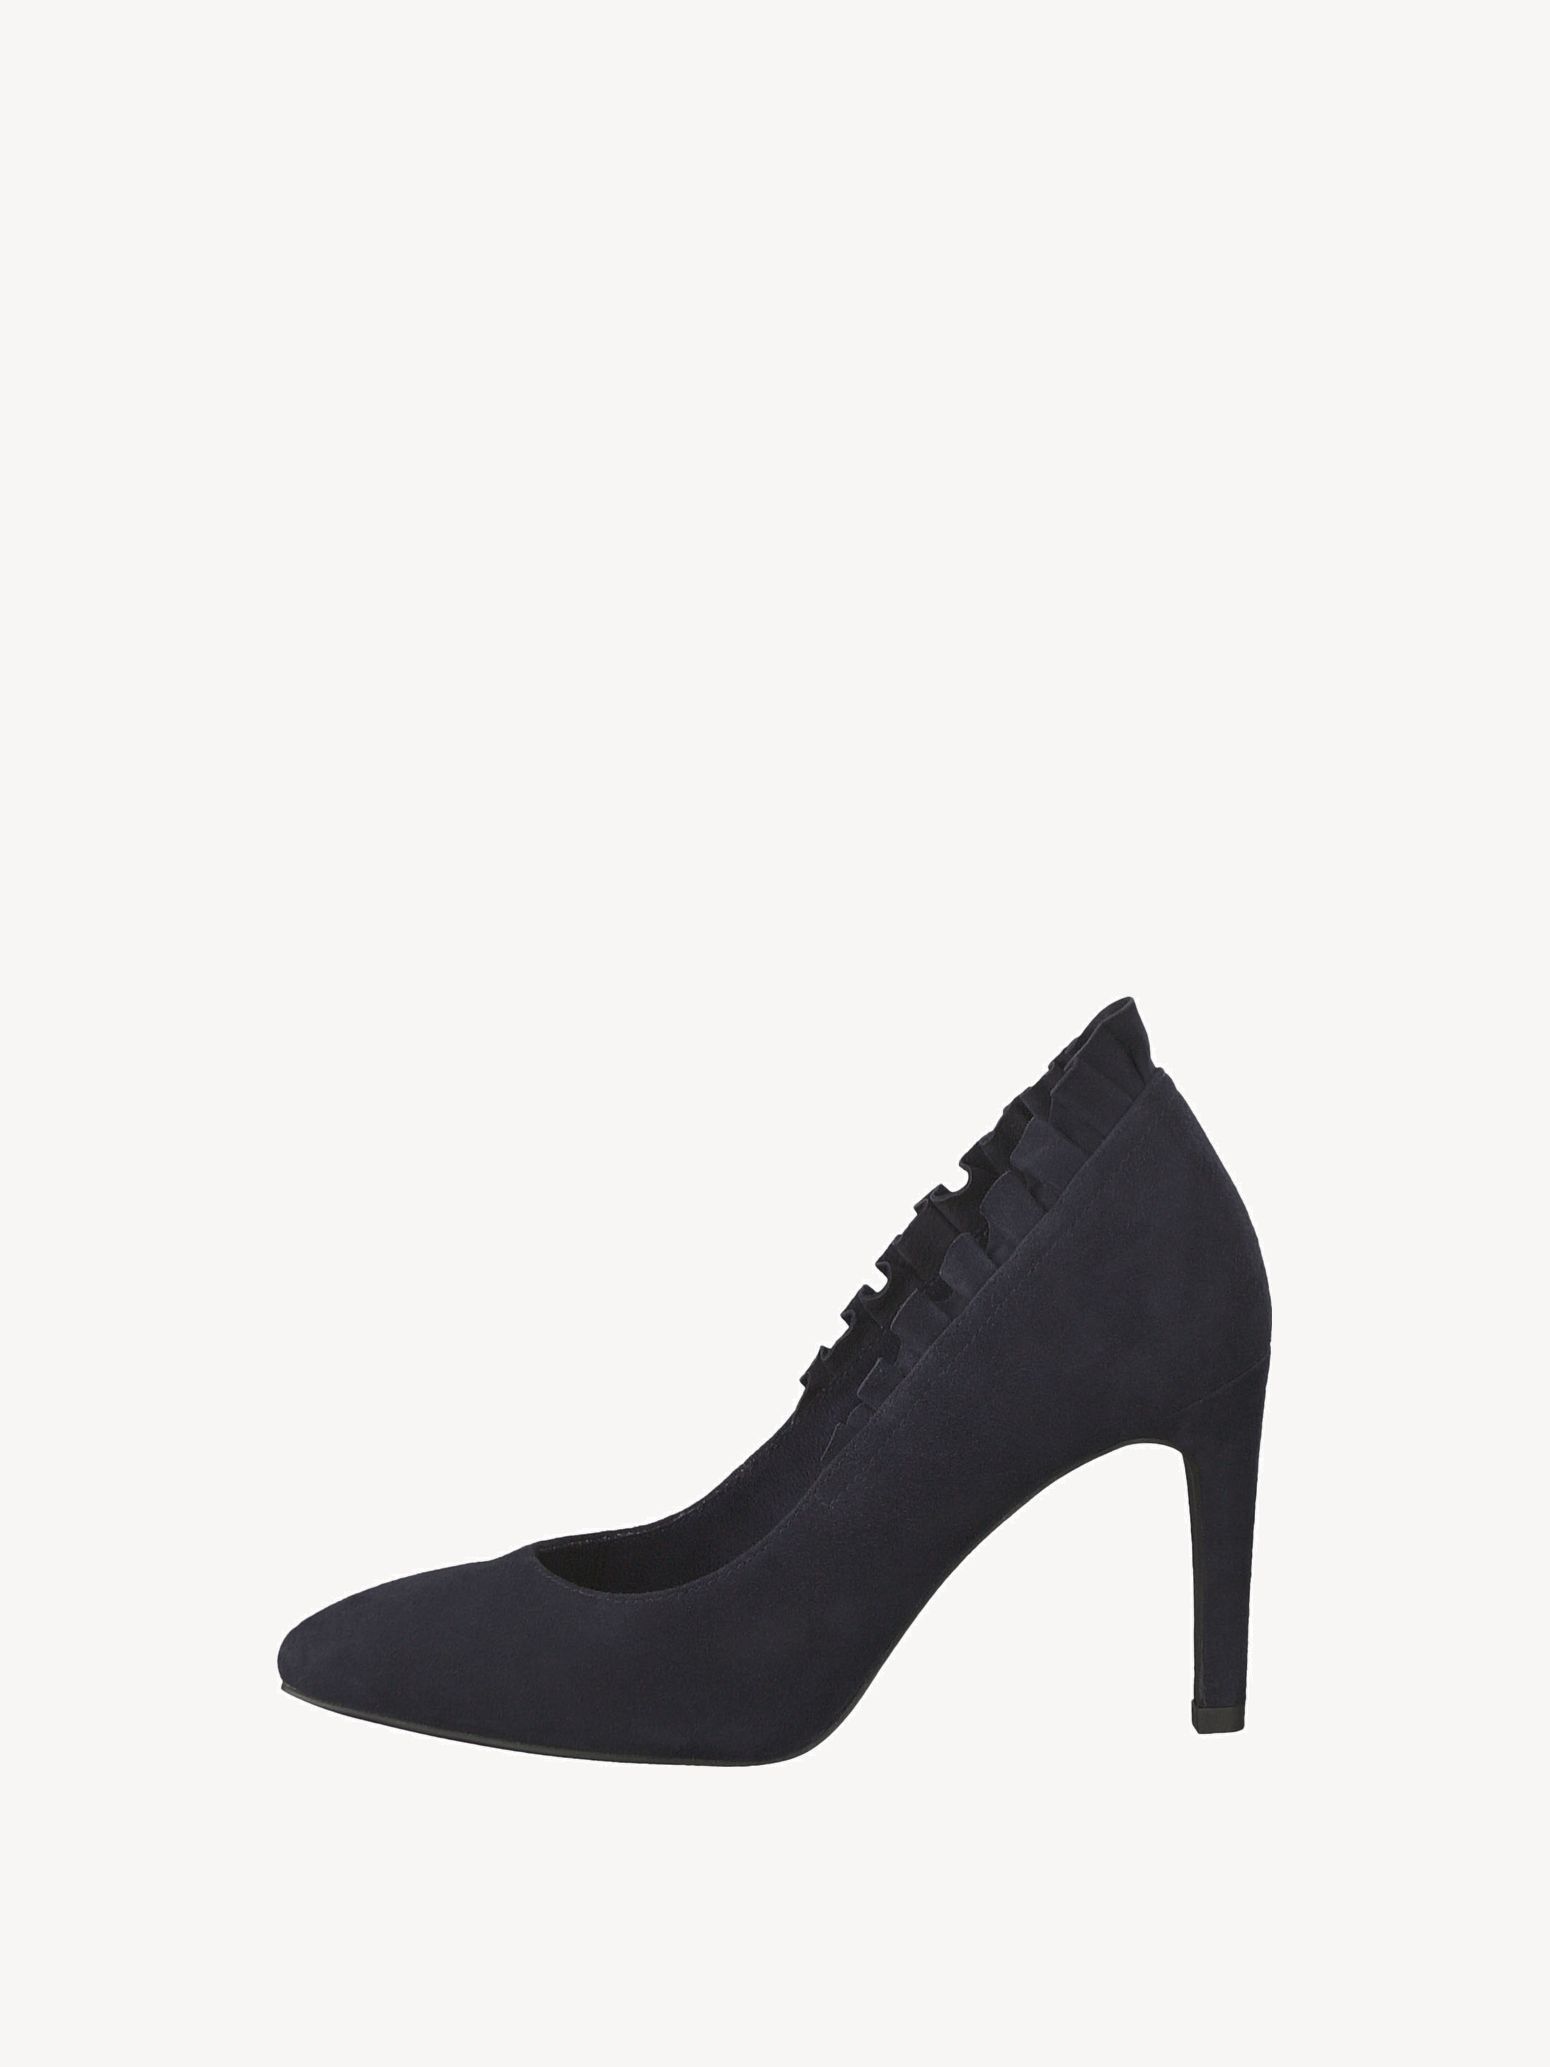 buy pumps heels online